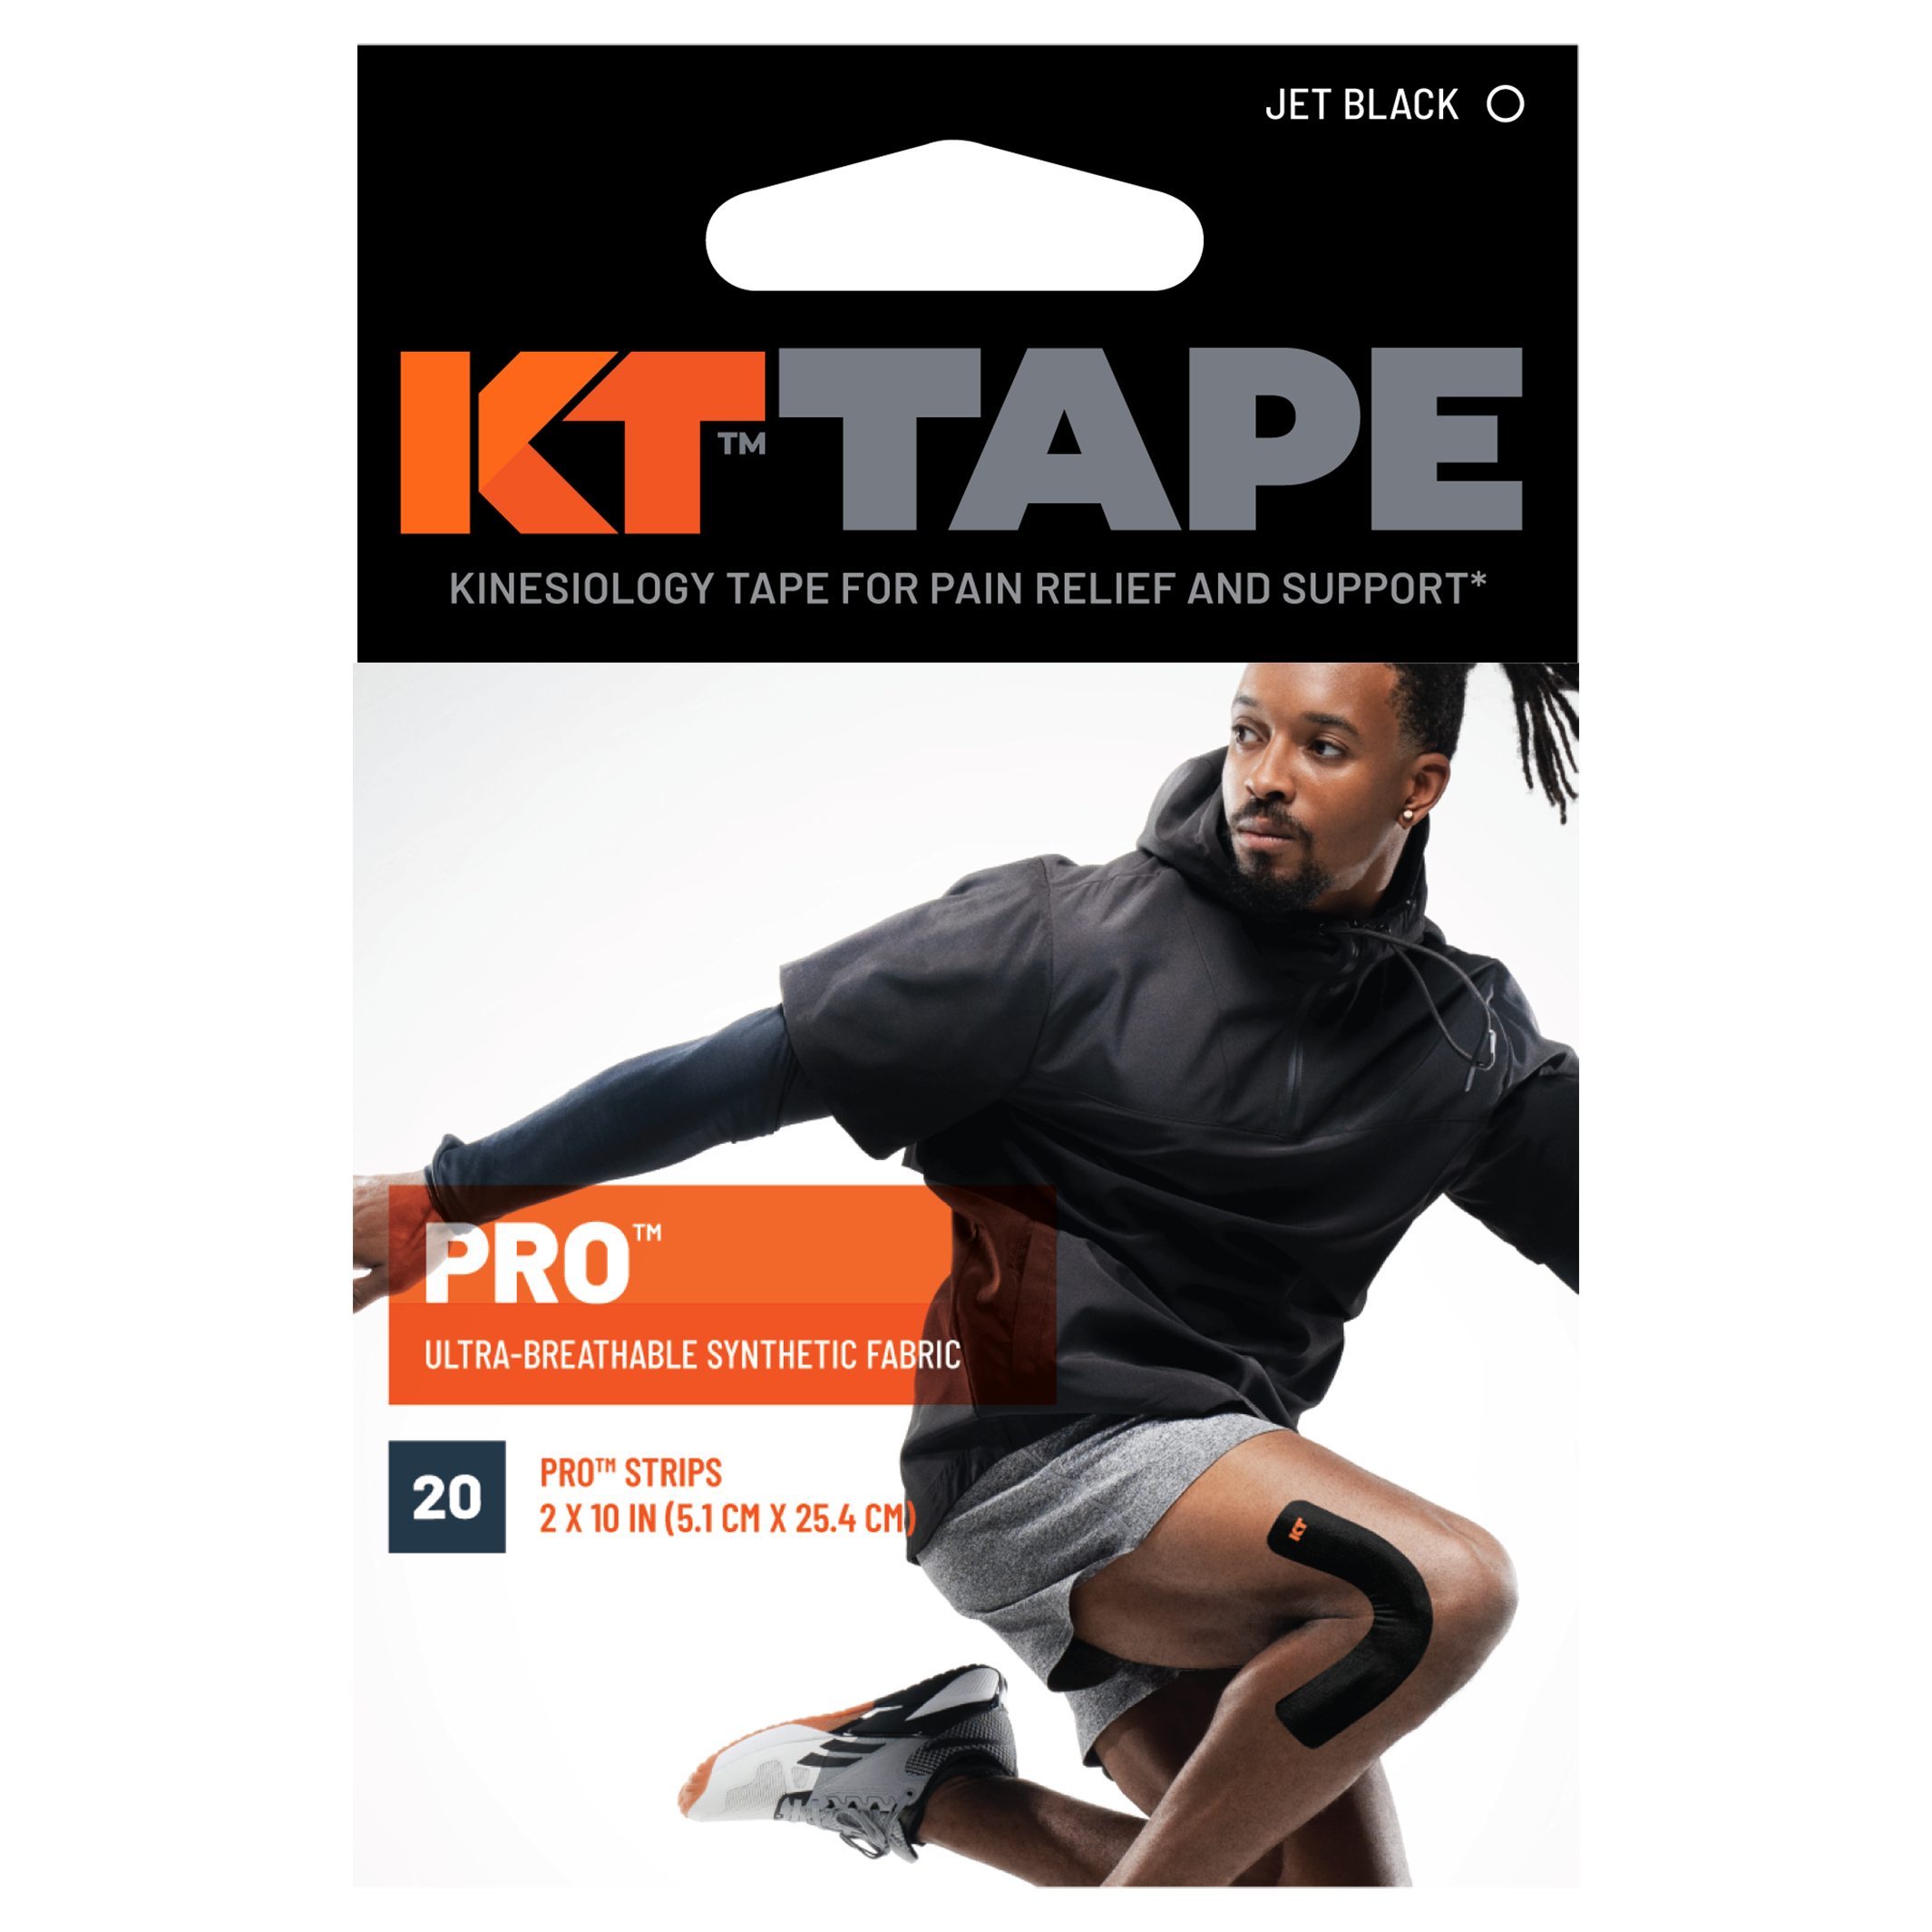 KT Tape Pro packaging#color_jet-black